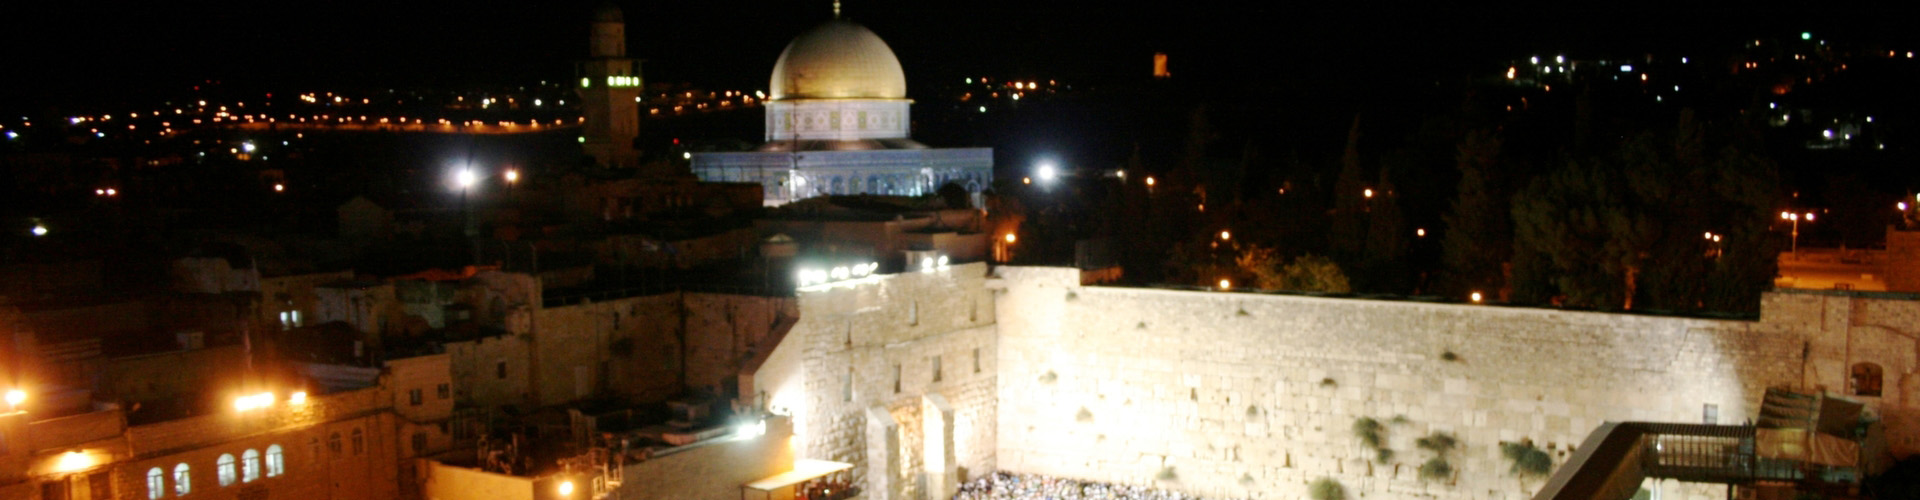 המלצה לסיור לילי בירושלים